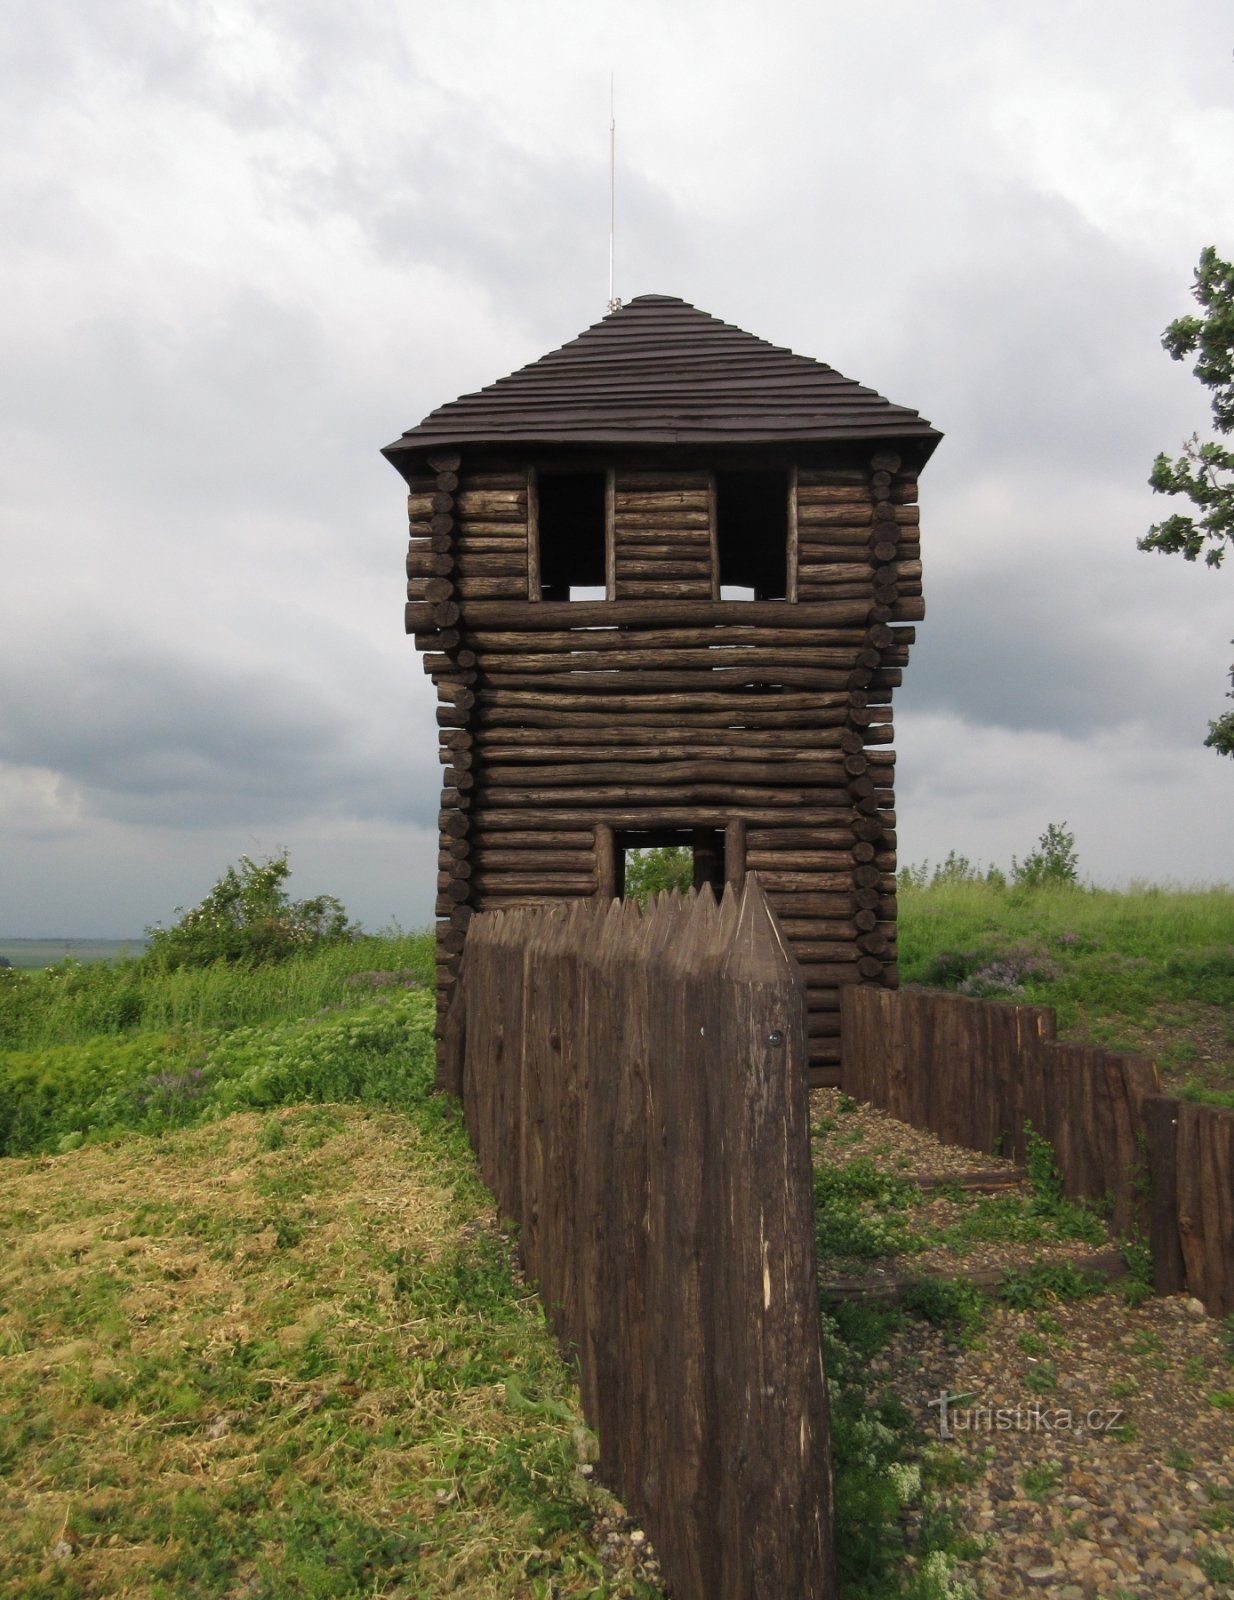 Hradiště and lookout tower Rubín (Podbořany)